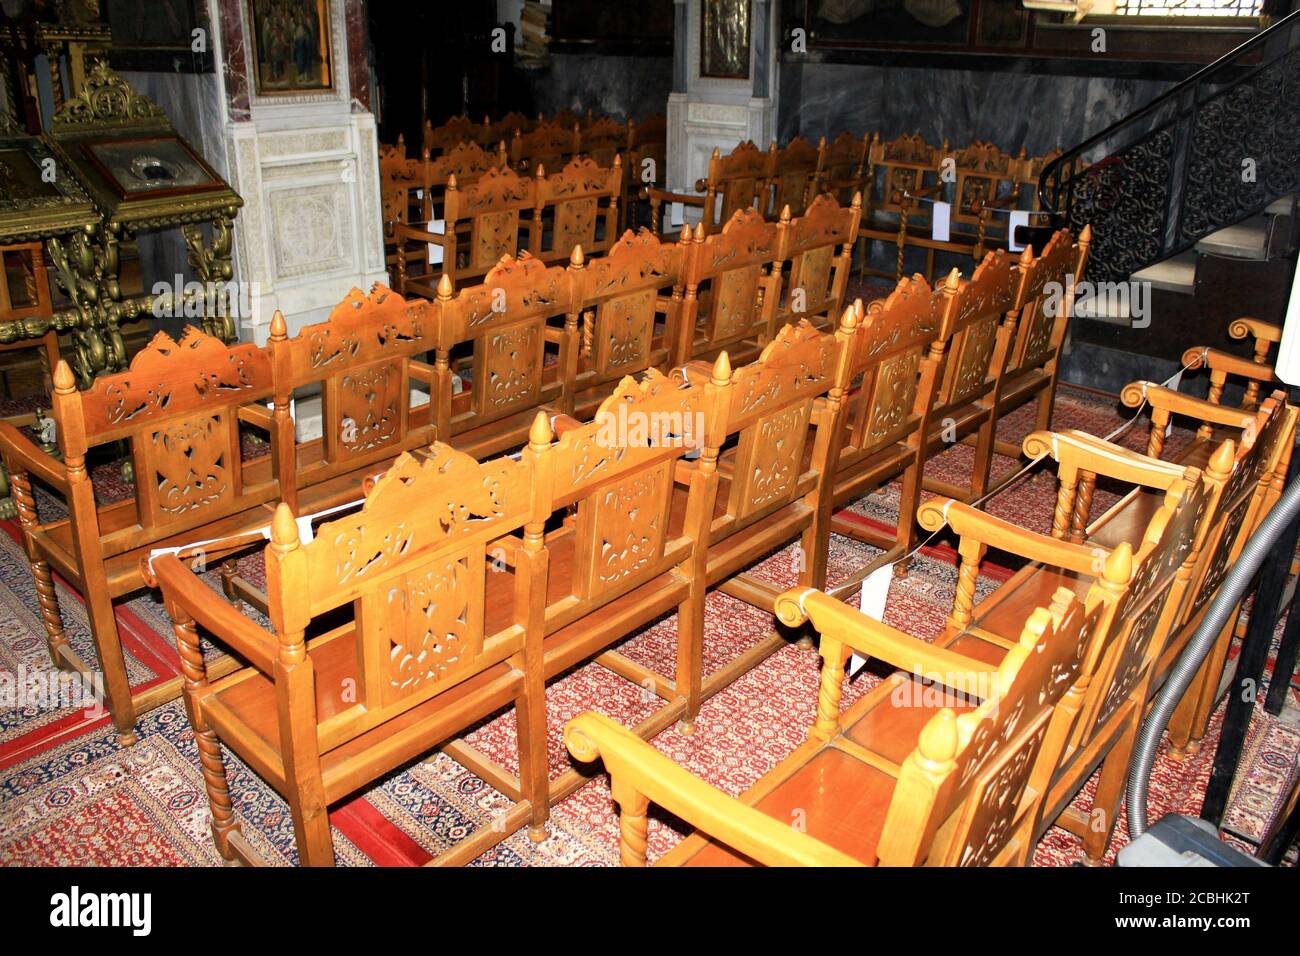 Posti vuoti all'interno della chiesa ortodossa cristiana ad Atene, Grecia, 6 maggio 2020. Foto Stock